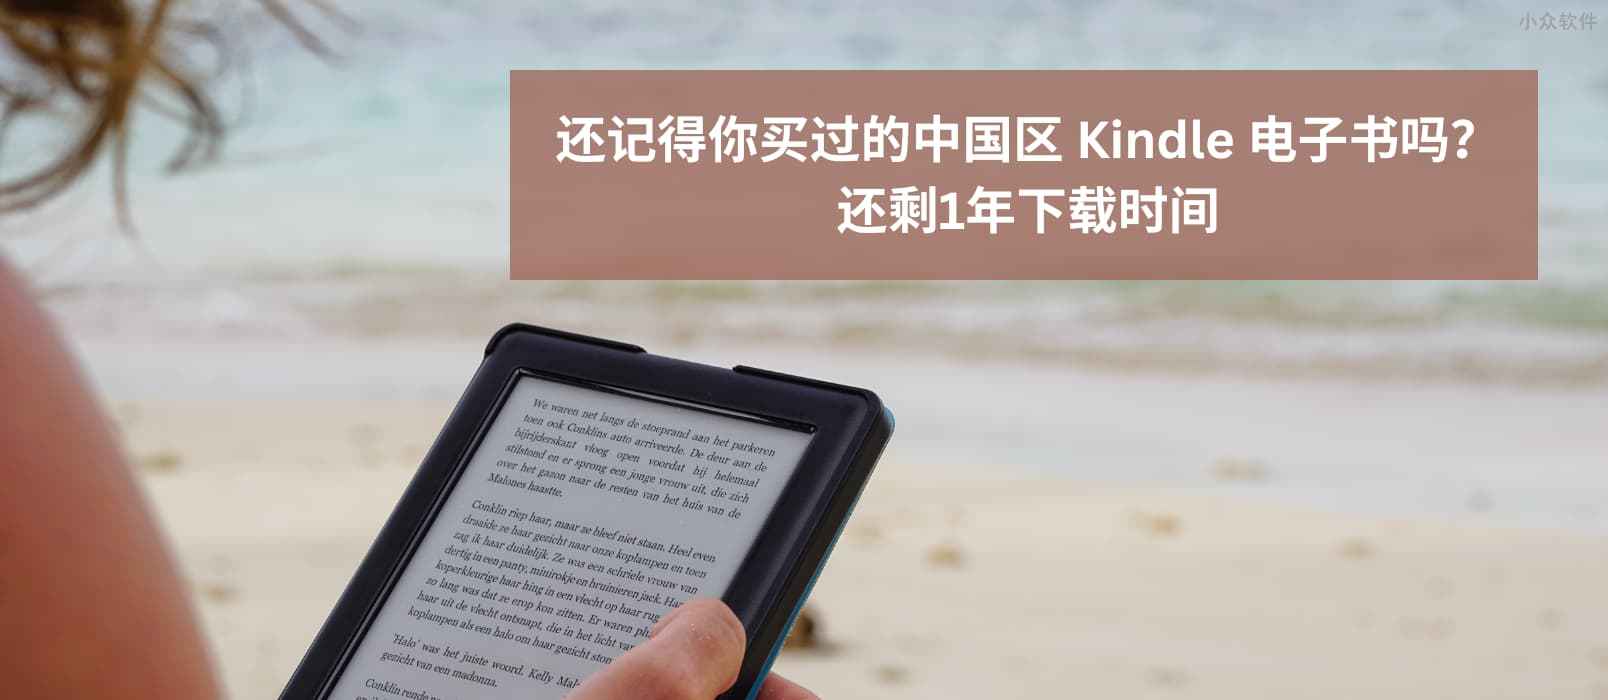 Kindle 中国电子书点停止服务还剩 1 年，是时候去下载那些买过的Kindle 中国区电子书了 1